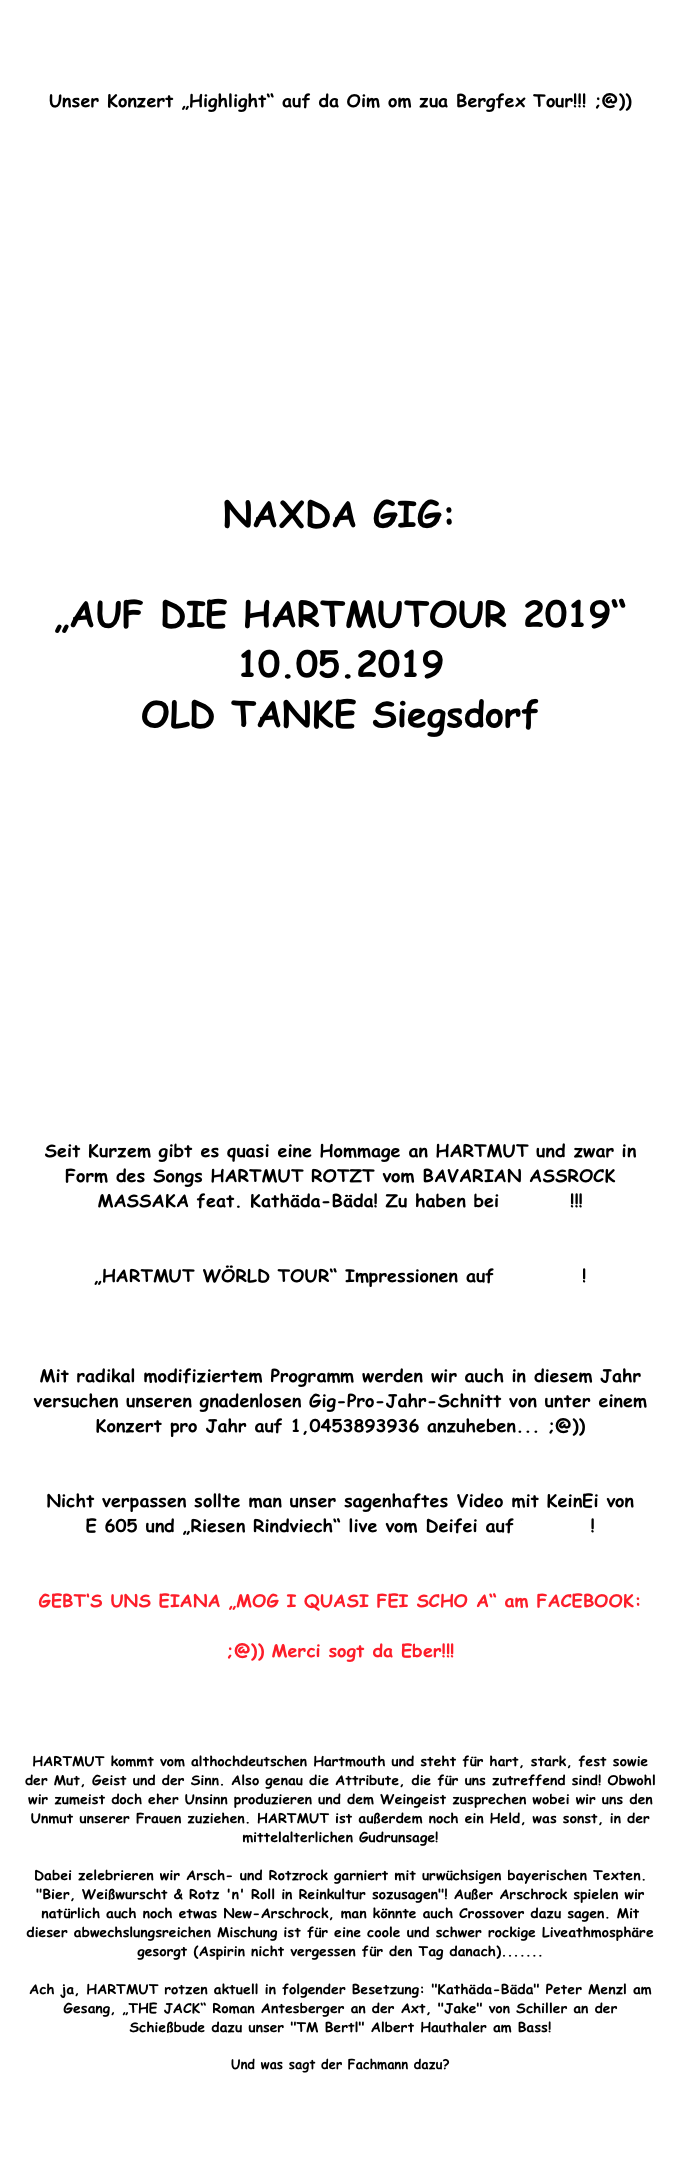 


Unser Konzert „Highlight“ auf da Oim om zua Bergfex Tour!!! ;@))















NAXDA GIG:

„AUF DIE HARTMUTOUR 2019“
10.05.2019
OLD TANKE Siegsdorf














Seit Kurzem gibt es quasi eine Hommage an HARTMUT und zwar in Form des Songs HARTMUT ROTZT vom BAVARIAN ASSROCK MASSAKA feat. Kathäda-Bäda! Zu haben bei iTunes !!!


„HARTMUT WÖRLD TOUR“ Impressionen auf festei.de!

Presse Bericht von der Wörld Tour in Tengling!!!

Mit radikal modifiziertem Programm werden wir auch in diesem Jahr versuchen unseren gnadenlosen Gig-Pro-Jahr-Schnitt von unter einem Konzert pro Jahr auf 1,0453893936 anzuheben... ;@))   


Nicht verpassen sollte man unser sagenhaftes Video mit KeinEi von      E 605 und „Riesen Rindviech“ live vom Deifei auf Youtube!


GEBT‘S UNS EIANA „MOG I QUASI FEI SCHO A“ am FACEBOOK: 

;@)) Merci sogt da Eber!!!


http://de-de.facebook.com/hartmut.rotzt


HARTMUT kommt vom althochdeutschen Hartmouth und steht für hart, stark, fest sowie der Mut, Geist und der Sinn. Also genau die Attribute, die für uns zutreffend sind! Obwohl wir zumeist doch eher Unsinn produzieren und dem Weingeist zusprechen wobei wir uns den Unmut unserer Frauen zuziehen. HARTMUT ist außerdem noch ein Held, was sonst, in der mittelalterlichen Gudrunsage!

Dabei zelebrieren wir Arsch- und Rotzrock garniert mit urwüchsigen bayerischen Texten. "Bier, Weißwurscht & Rotz 'n' Roll in Reinkultur sozusagen"! Außer Arschrock spielen wir natürlich auch noch etwas New-Arschrock, man könnte auch Crossover dazu sagen. Mit dieser abwechslungsreichen Mischung ist für eine coole und schwer rockige Liveathmosphäre gesorgt (Aspirin nicht vergessen für den Tag danach).......

Ach ja, HARTMUT rotzen aktuell in folgender Besetzung: "Kathäda-Bäda" Peter Menzl am Gesang, „THE JACK“ Roman Antesberger an der Axt, "Jake" von Schiller an der Schießbude dazu unser "TM Bertl" Albert Hauthaler am Bass!

Und was sagt der Fachmann dazu?

Review zu HARTMUTs DVD Material von DJ Earache / Club Soundgarden


